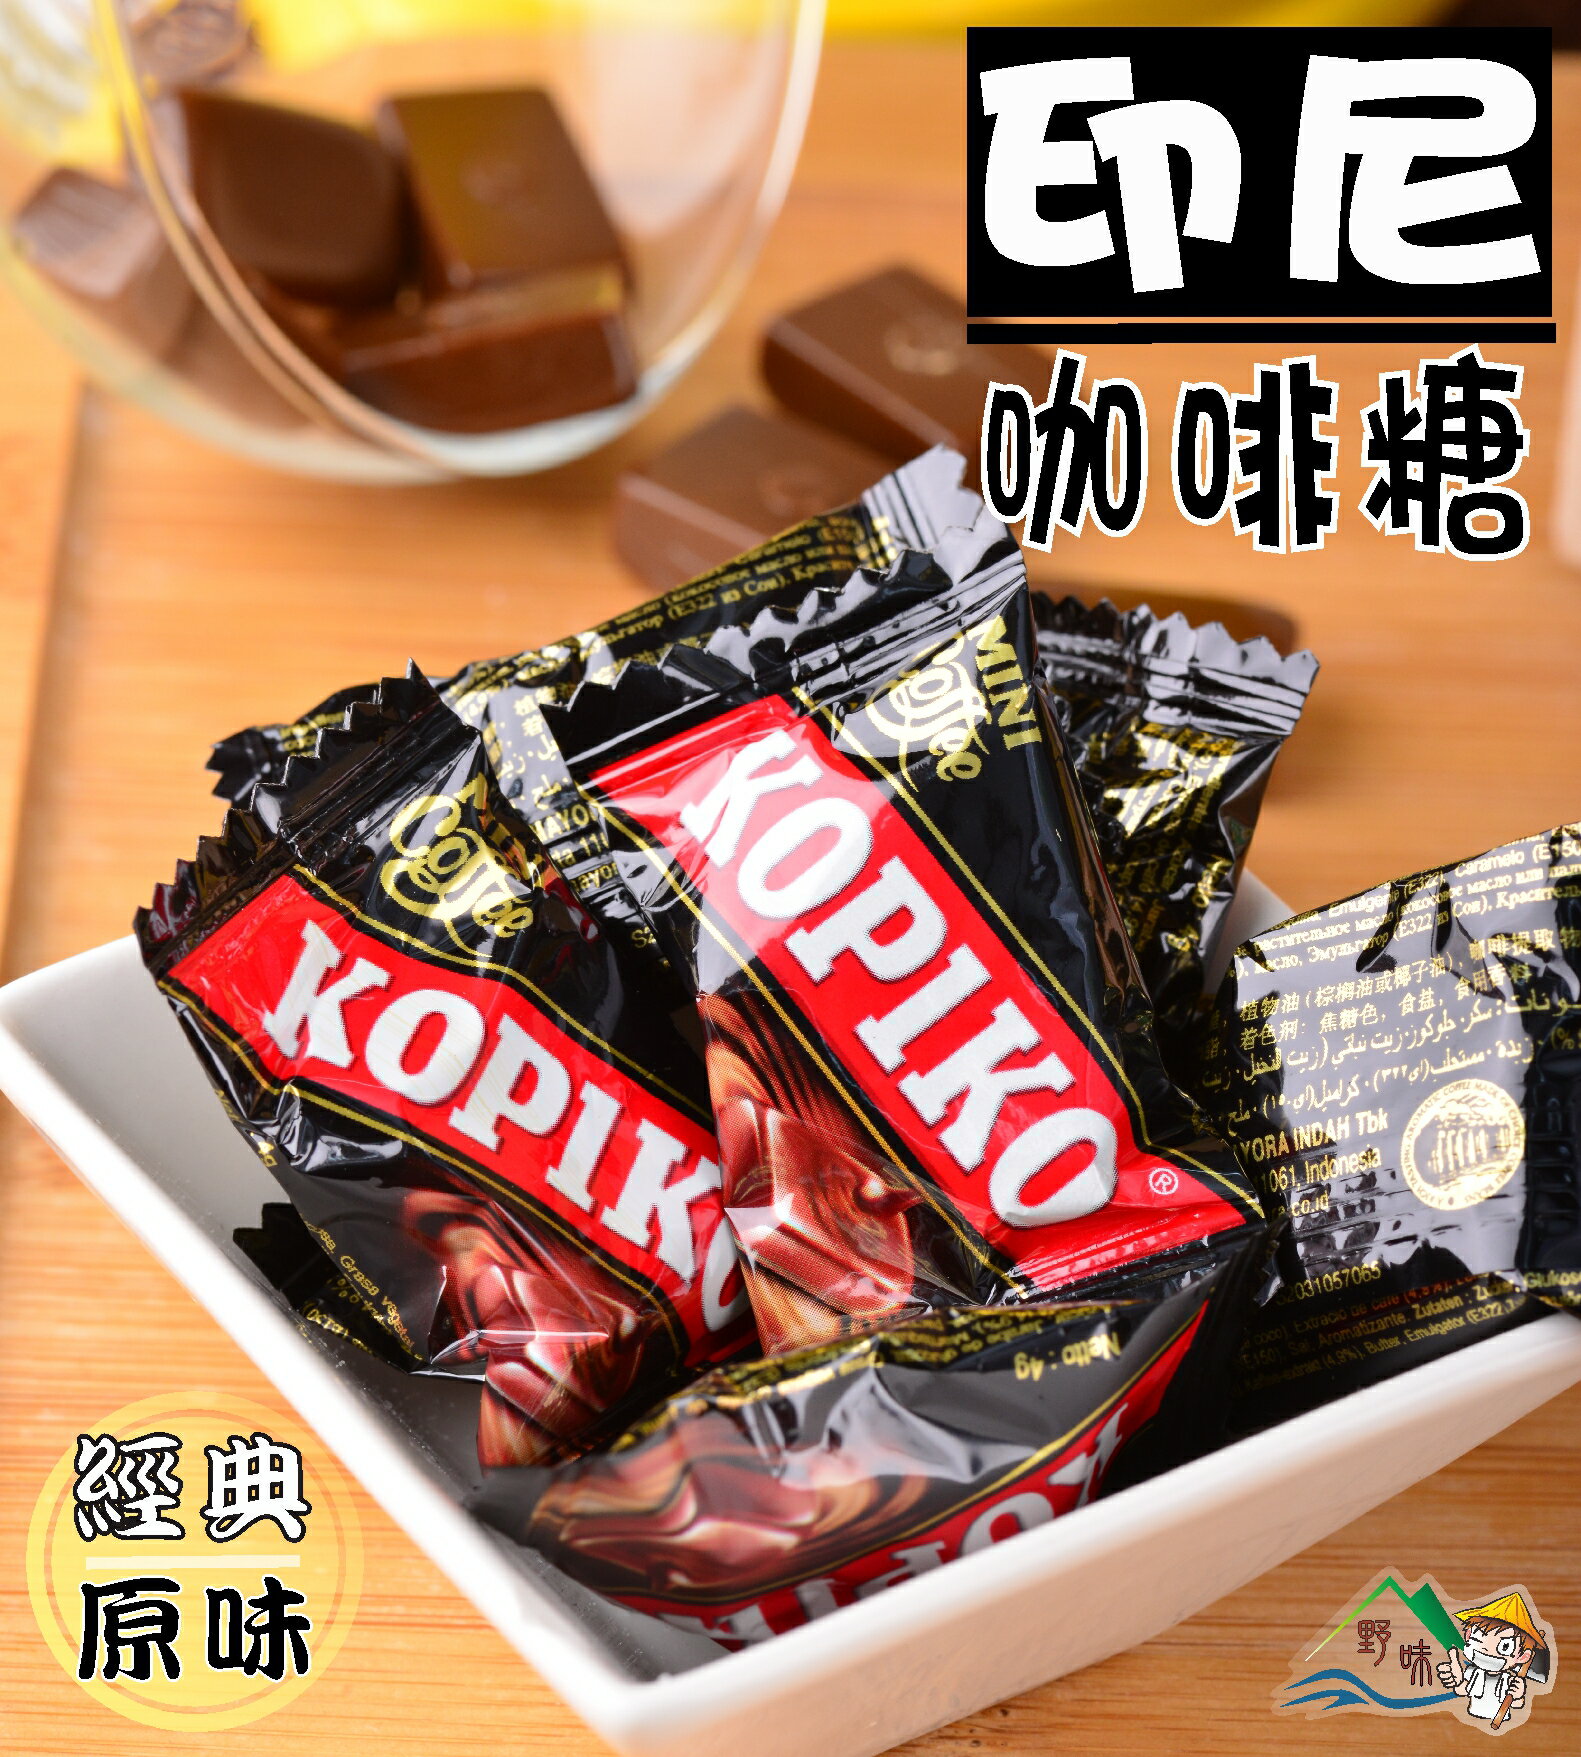 【野味食品】KOPIKO咖啡糖150g/包，350g/包(印尼咖啡糖,經典原味、卡布奇諾，口味可混搭)桃園實體店面出貨